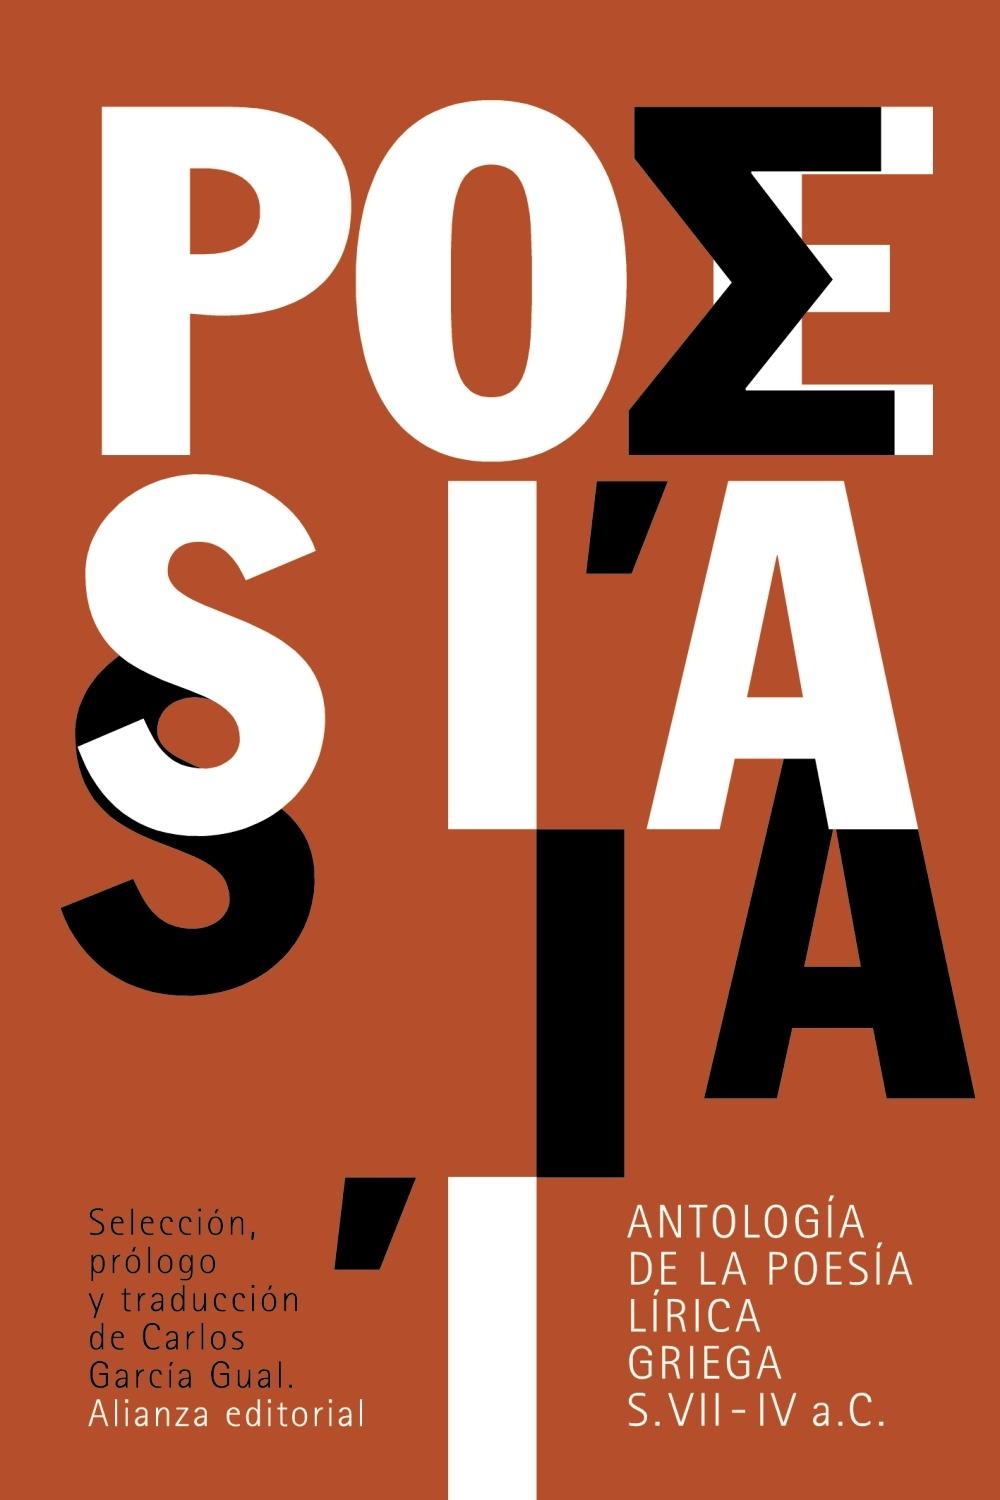 Antología de la Poesía Lírica Griega "(Siglos Vii-Iv A. C.)". 